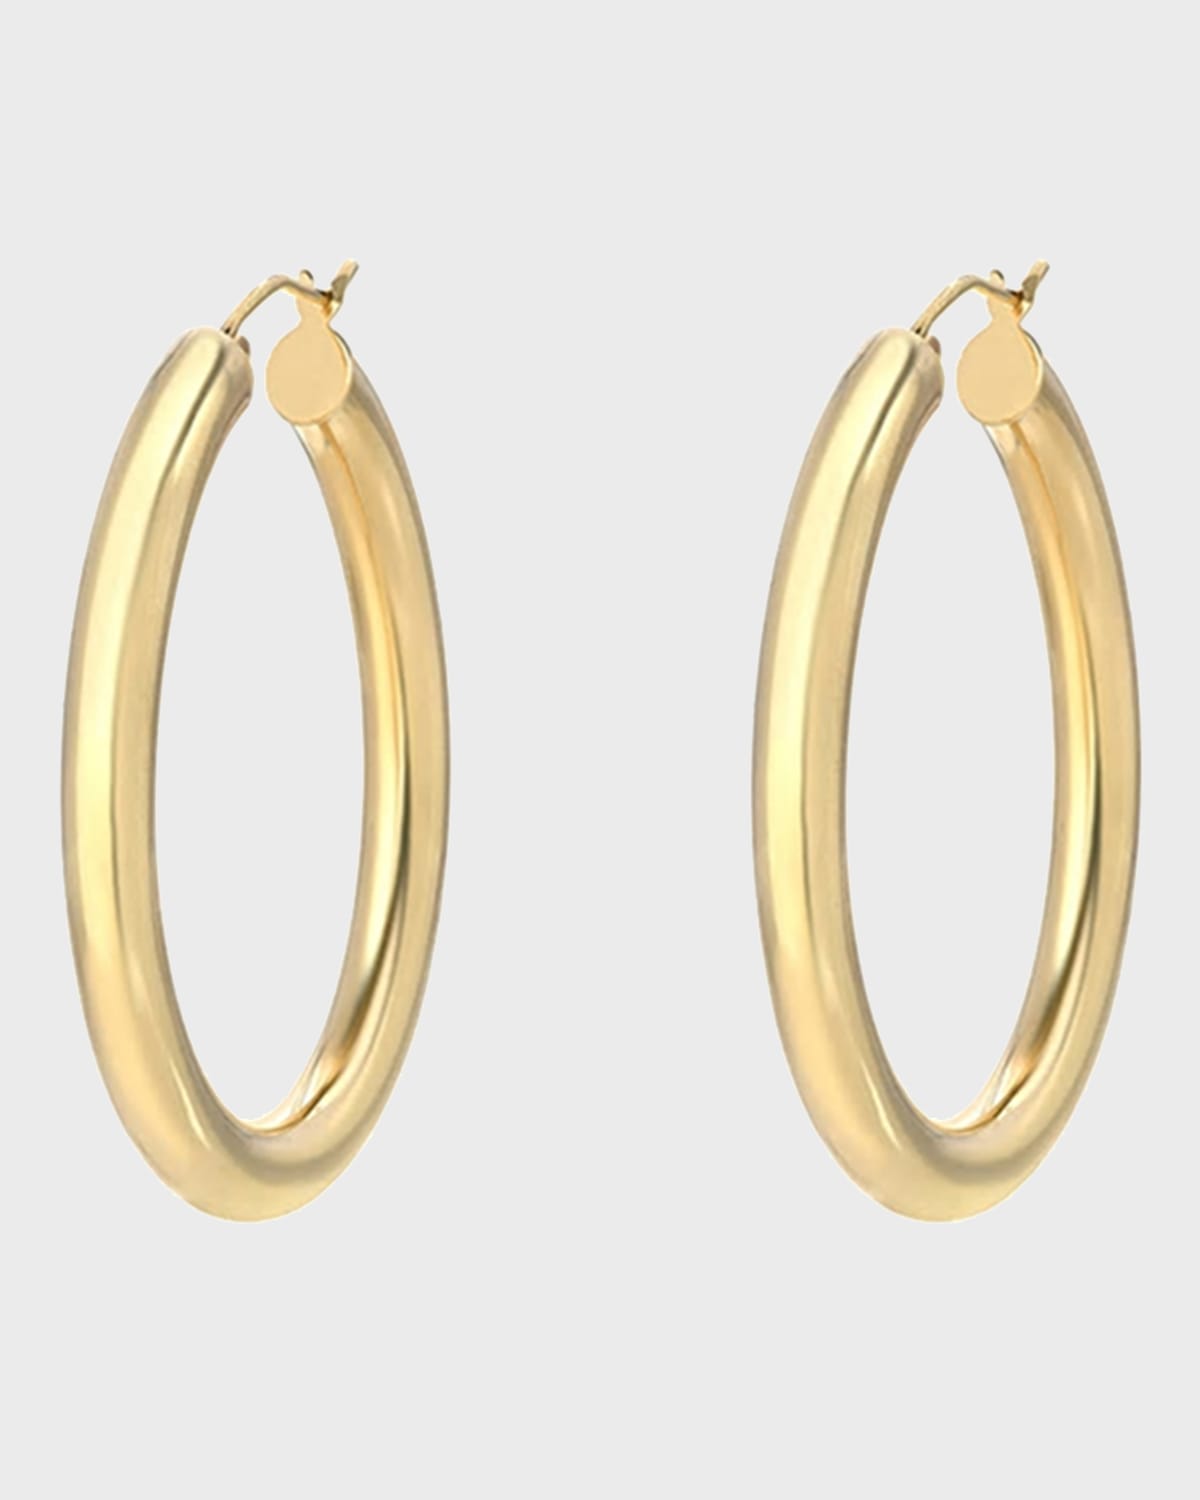 Zoe Lev Jewelry 14k Gold Thick Oval Hoop Earrings | Neiman Marcus